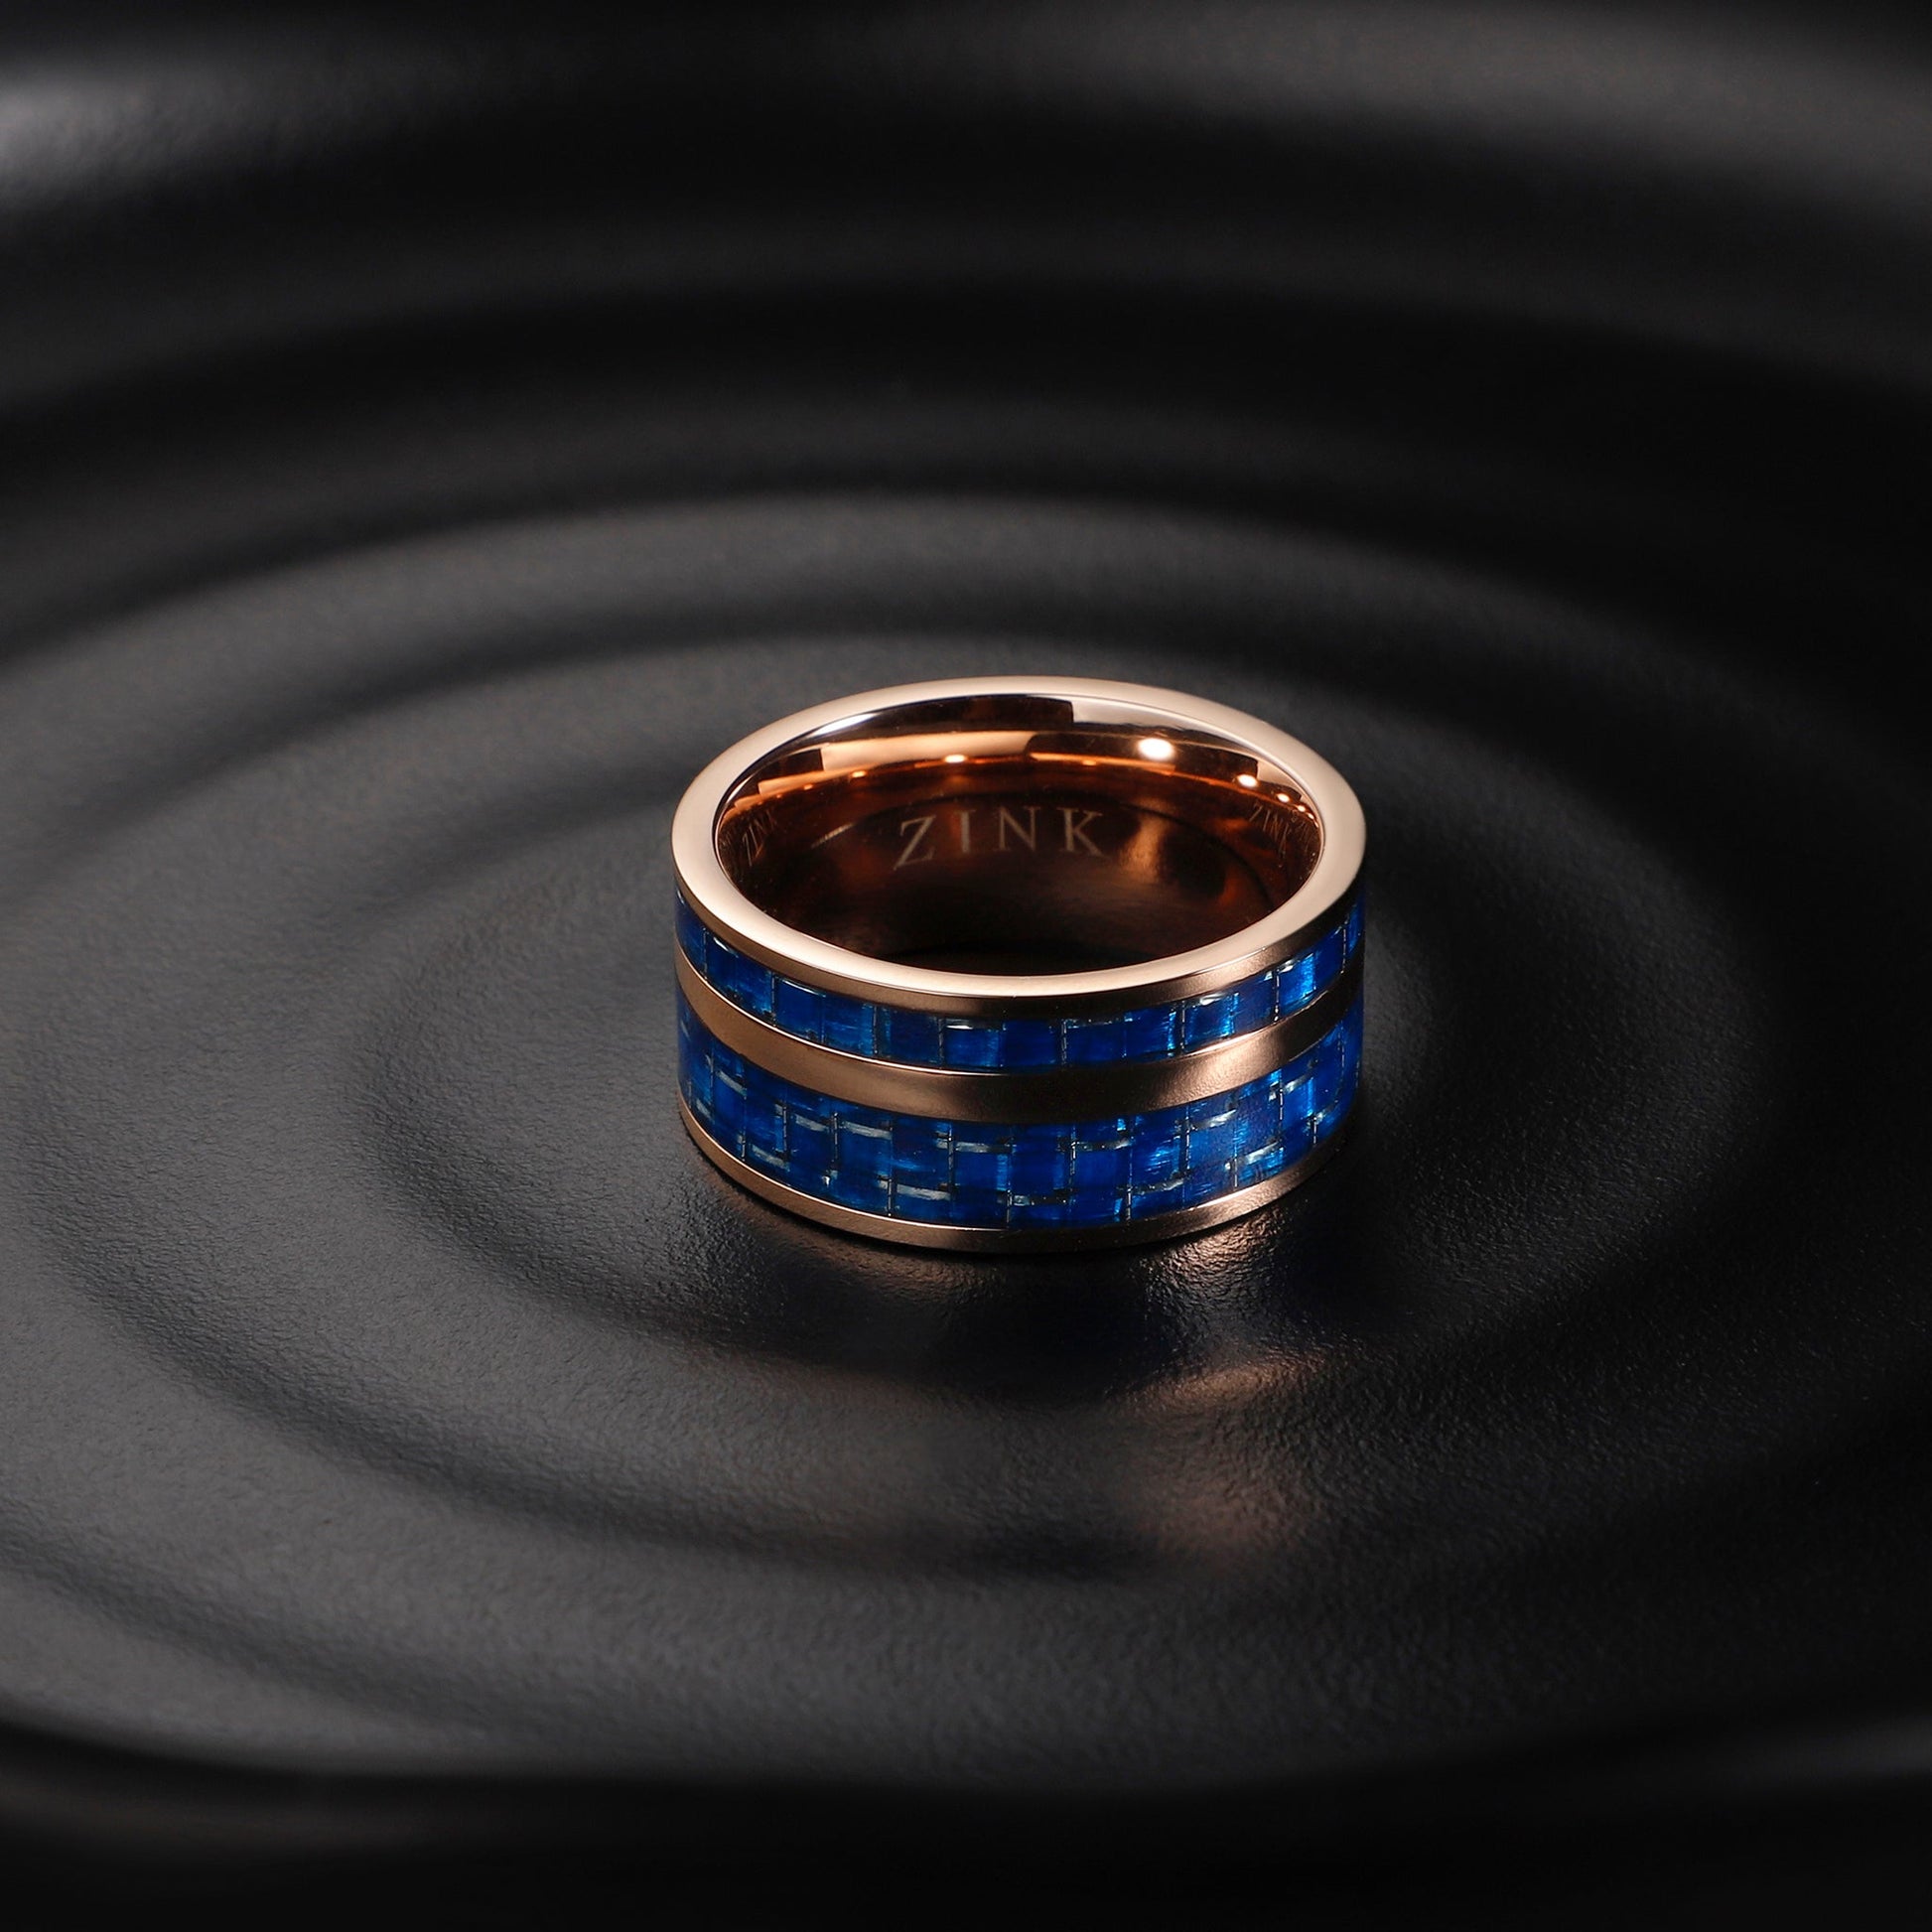 ZJRG016SBL-19 ZINK Men's Rings